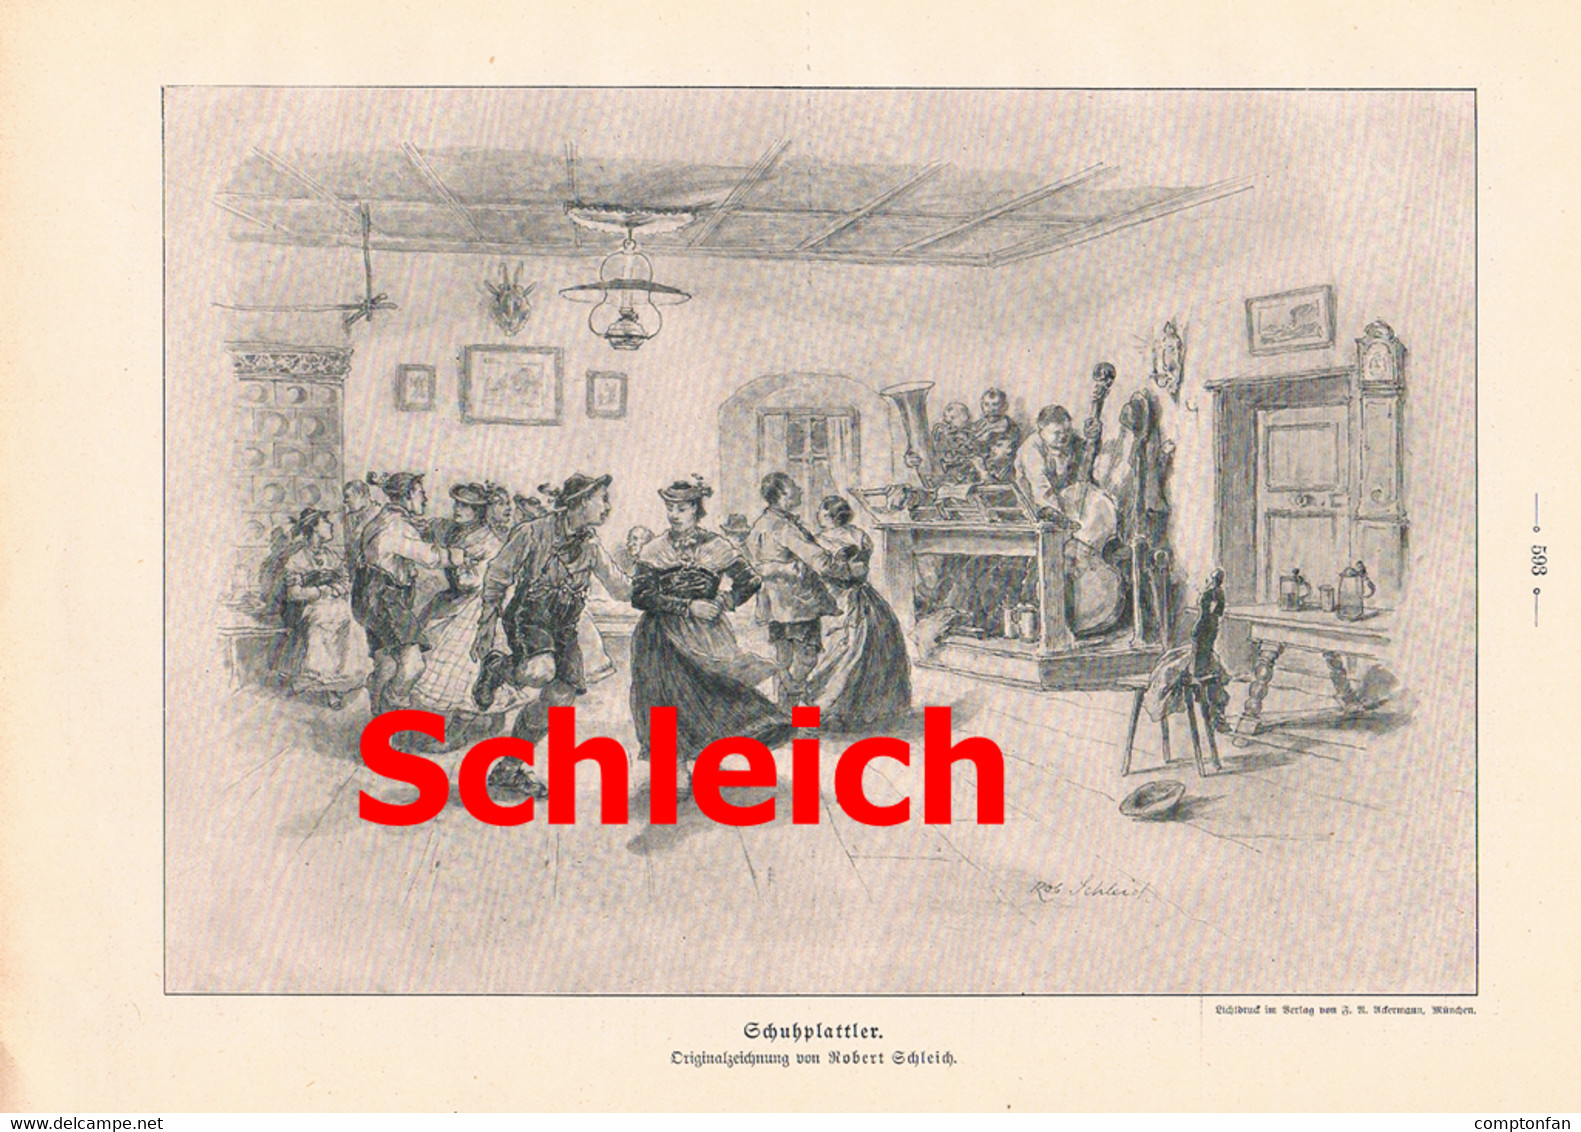 A102 812 Robert Schleich Schuhplattler Tegernsee Schliersee Artikel Mit Bild 1905 !! - Théâtre & Danse